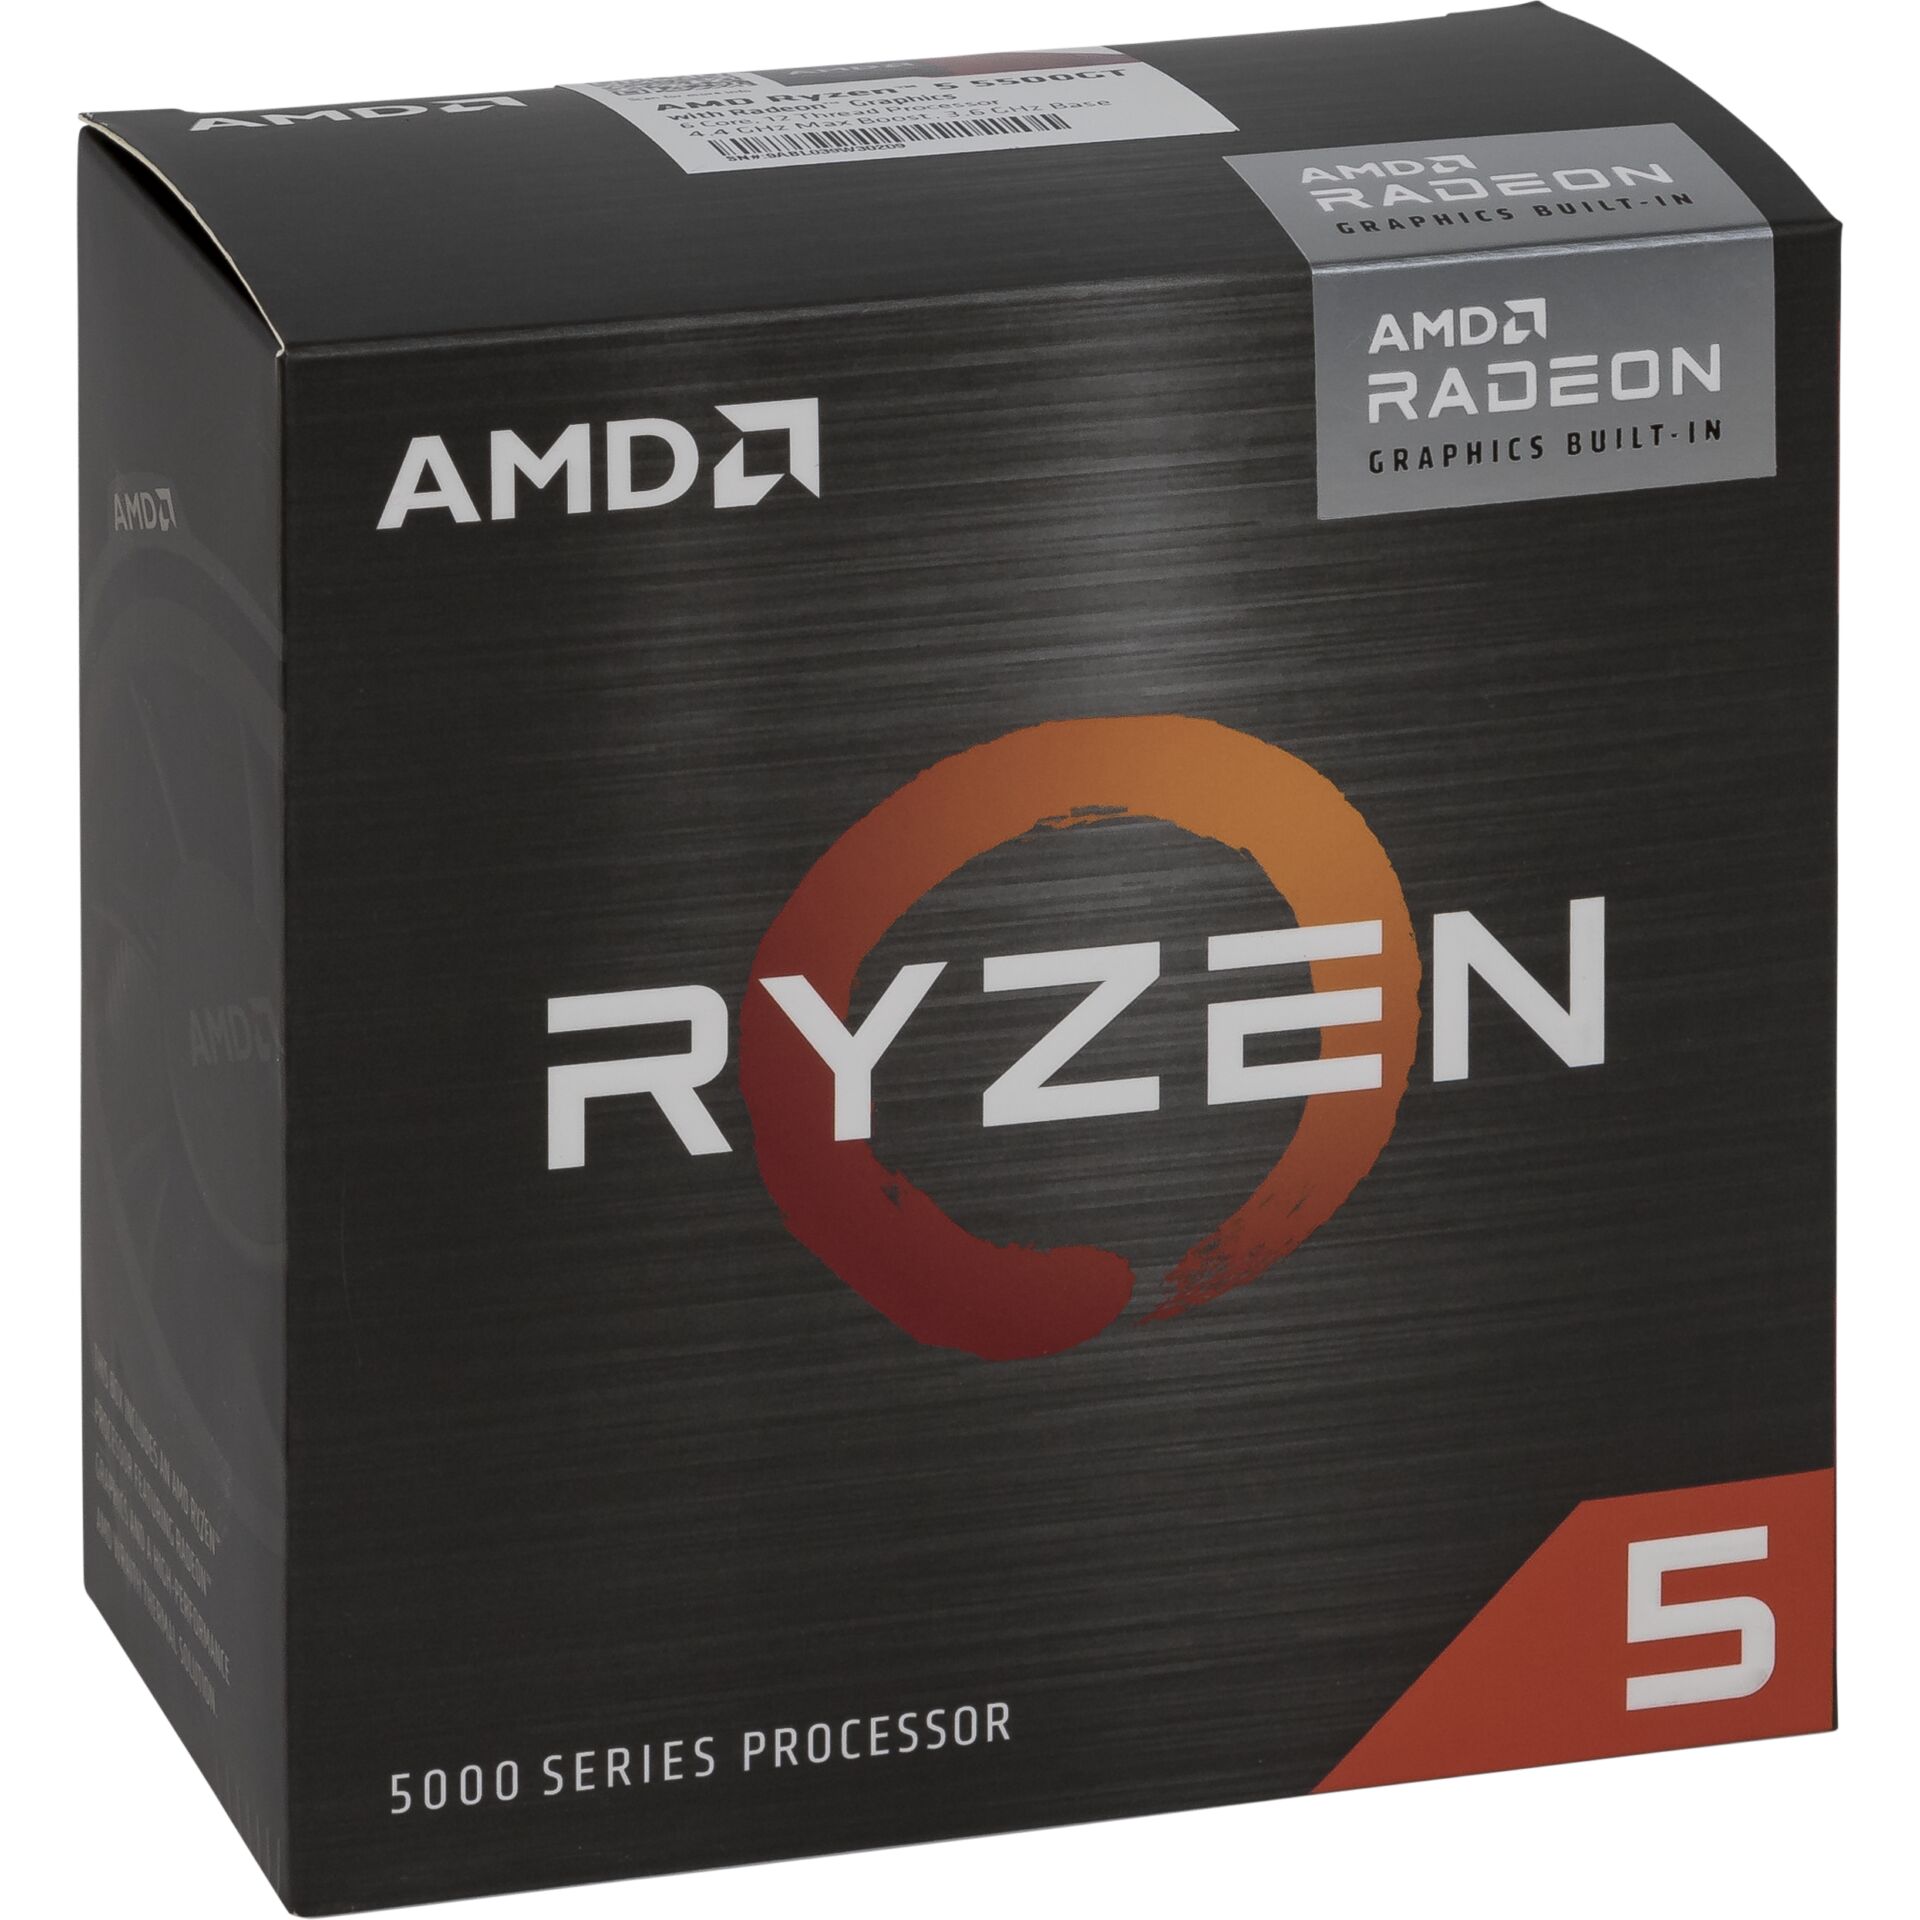 AMD Ryzen 5 5500GT, 6C/12T, 3.60-4.40GHz, boxed, Sockel AMD AM4 (PGA1331), Cezanne CPU